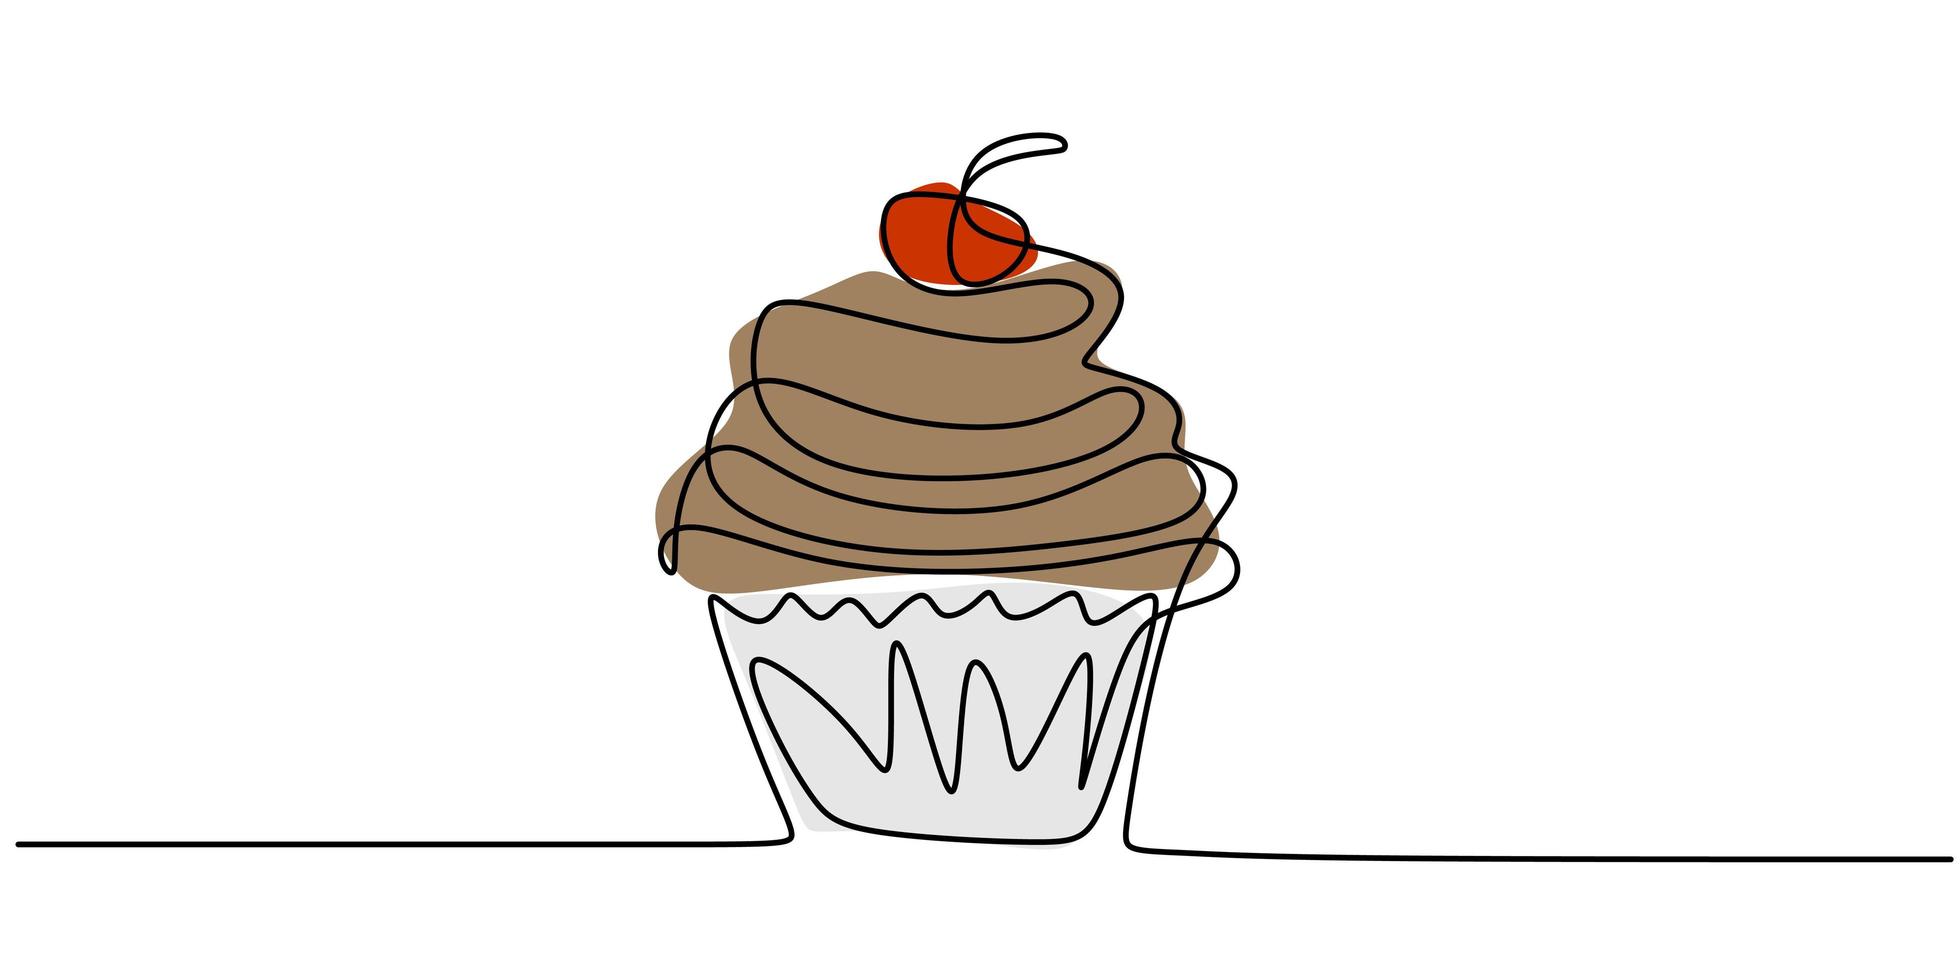 Cupcake con decoración y elemento de dibujo de línea continua cereza aislado sobre fondo blanco. vector